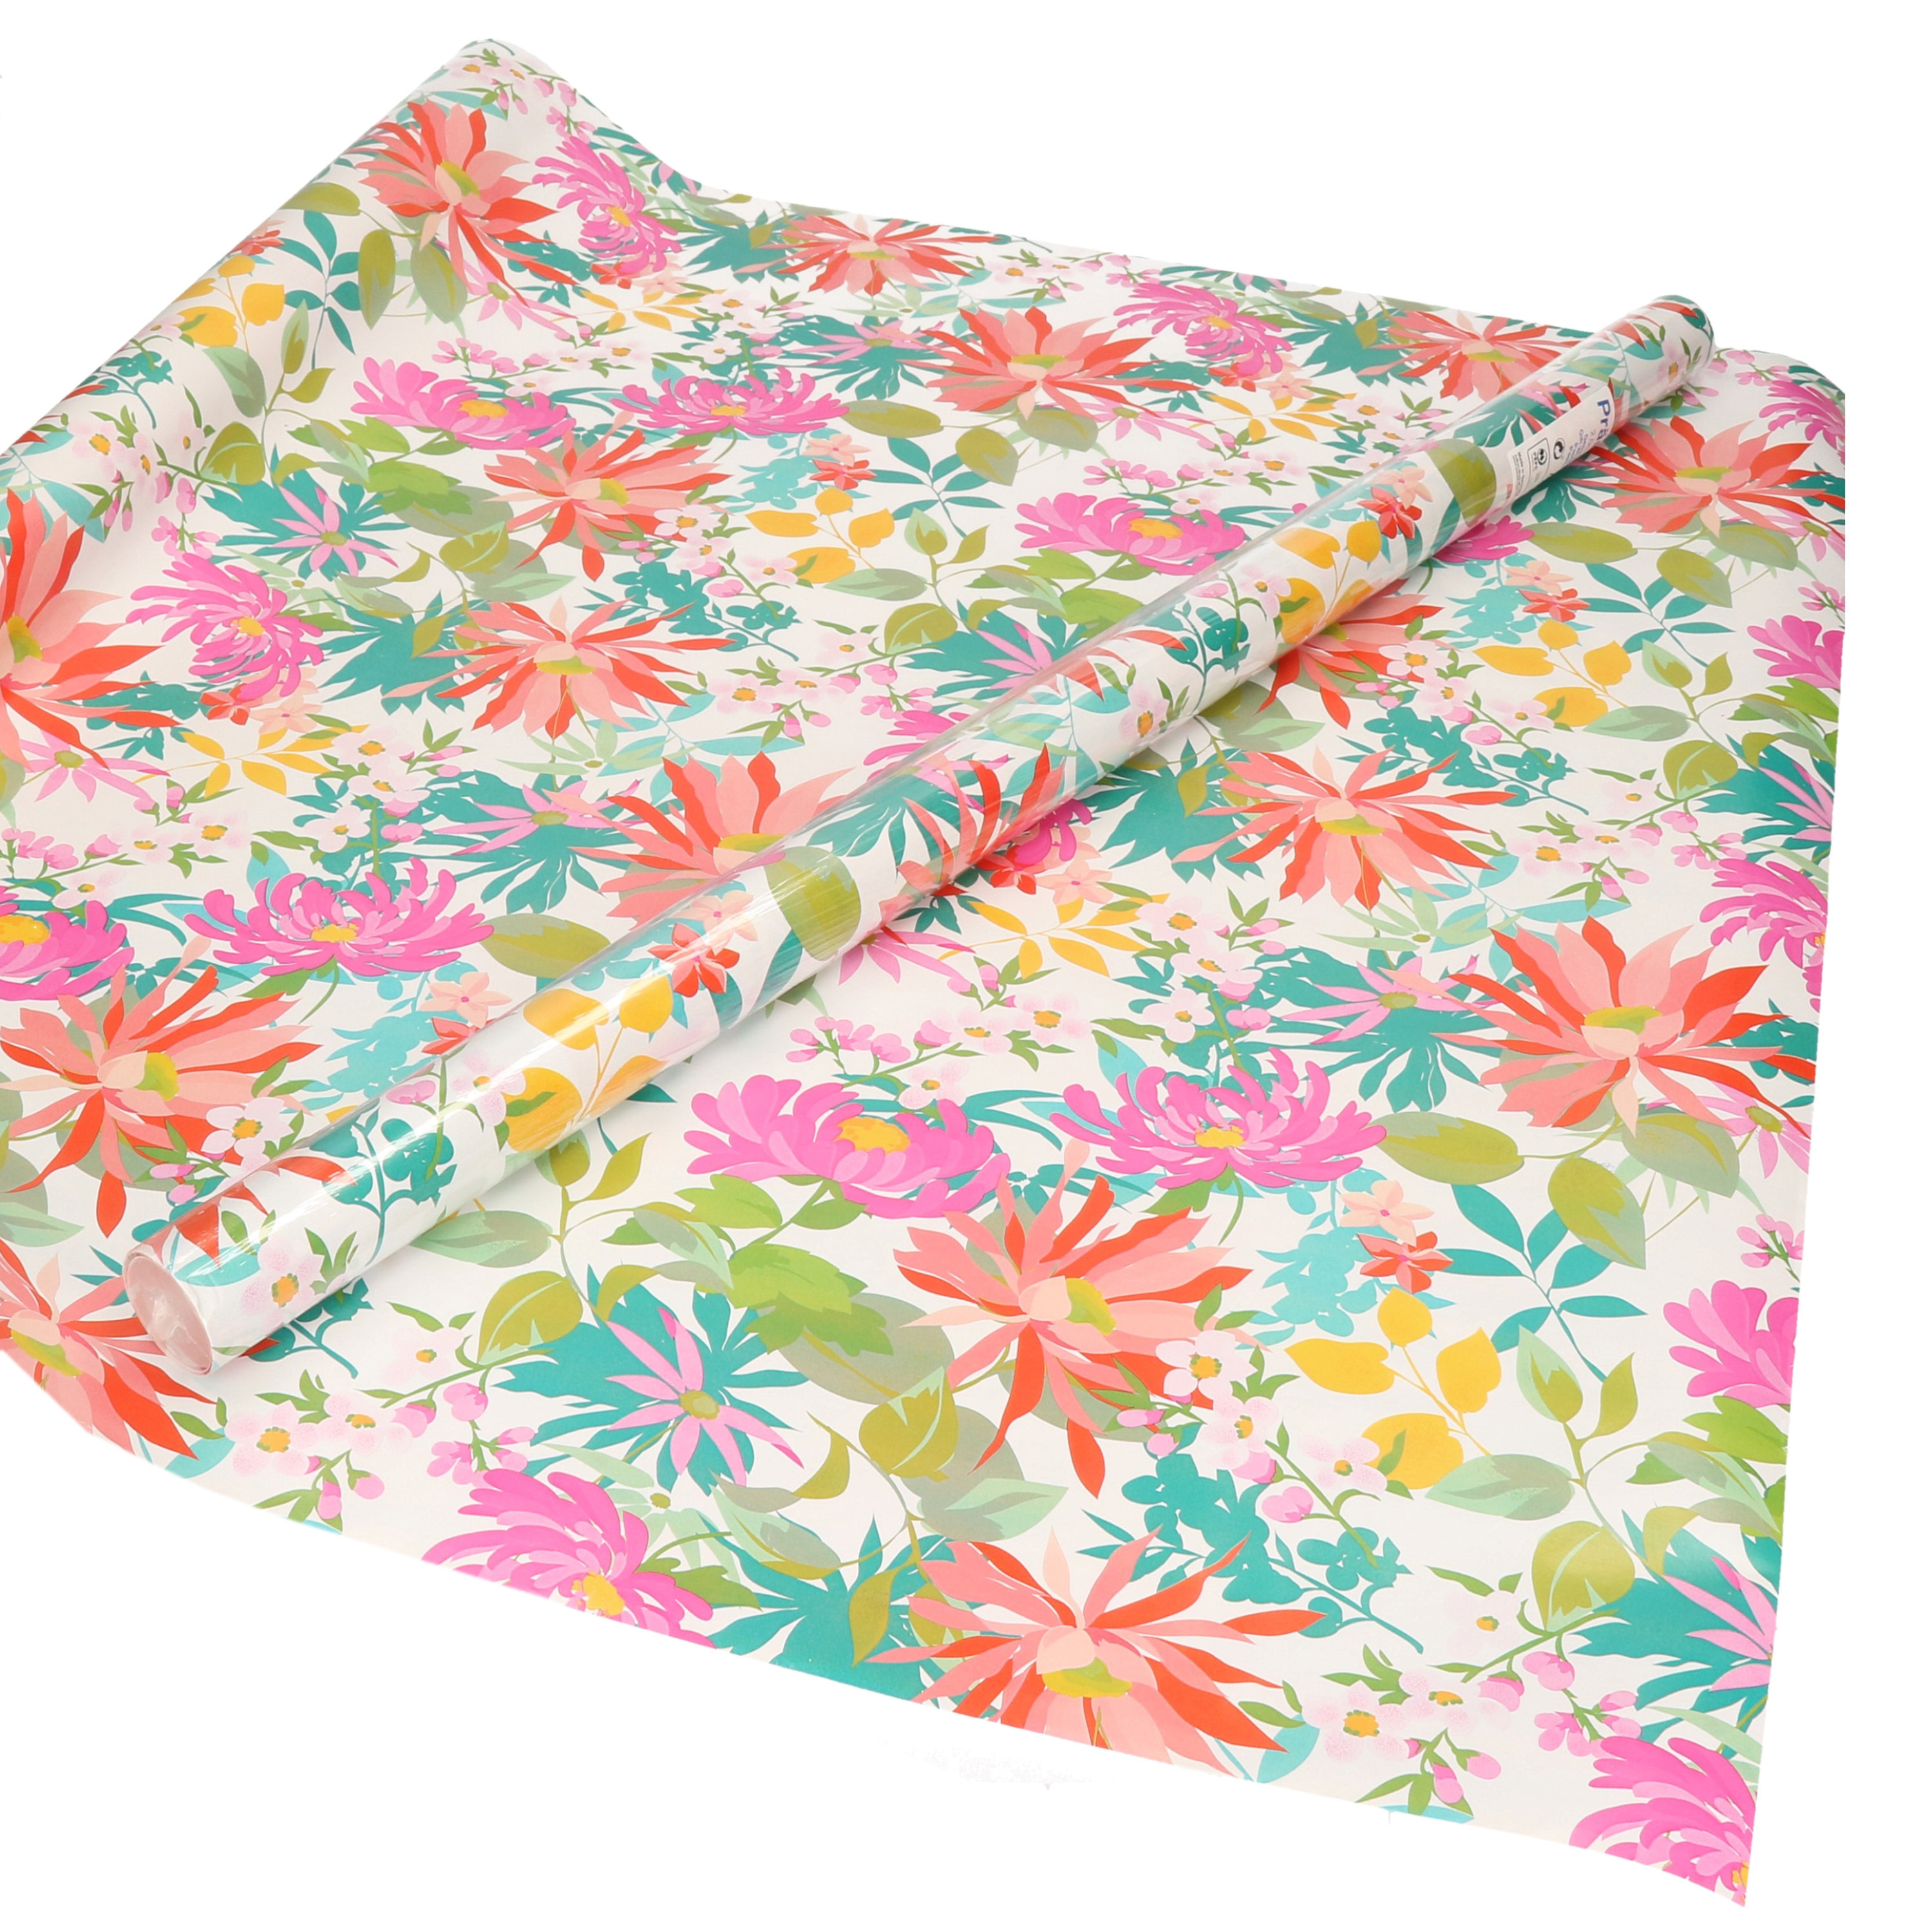 1x Inpakpapier/cadeaupapier wit met gekleurde blaadjes/bloemen motief 200 x 70 cm rol